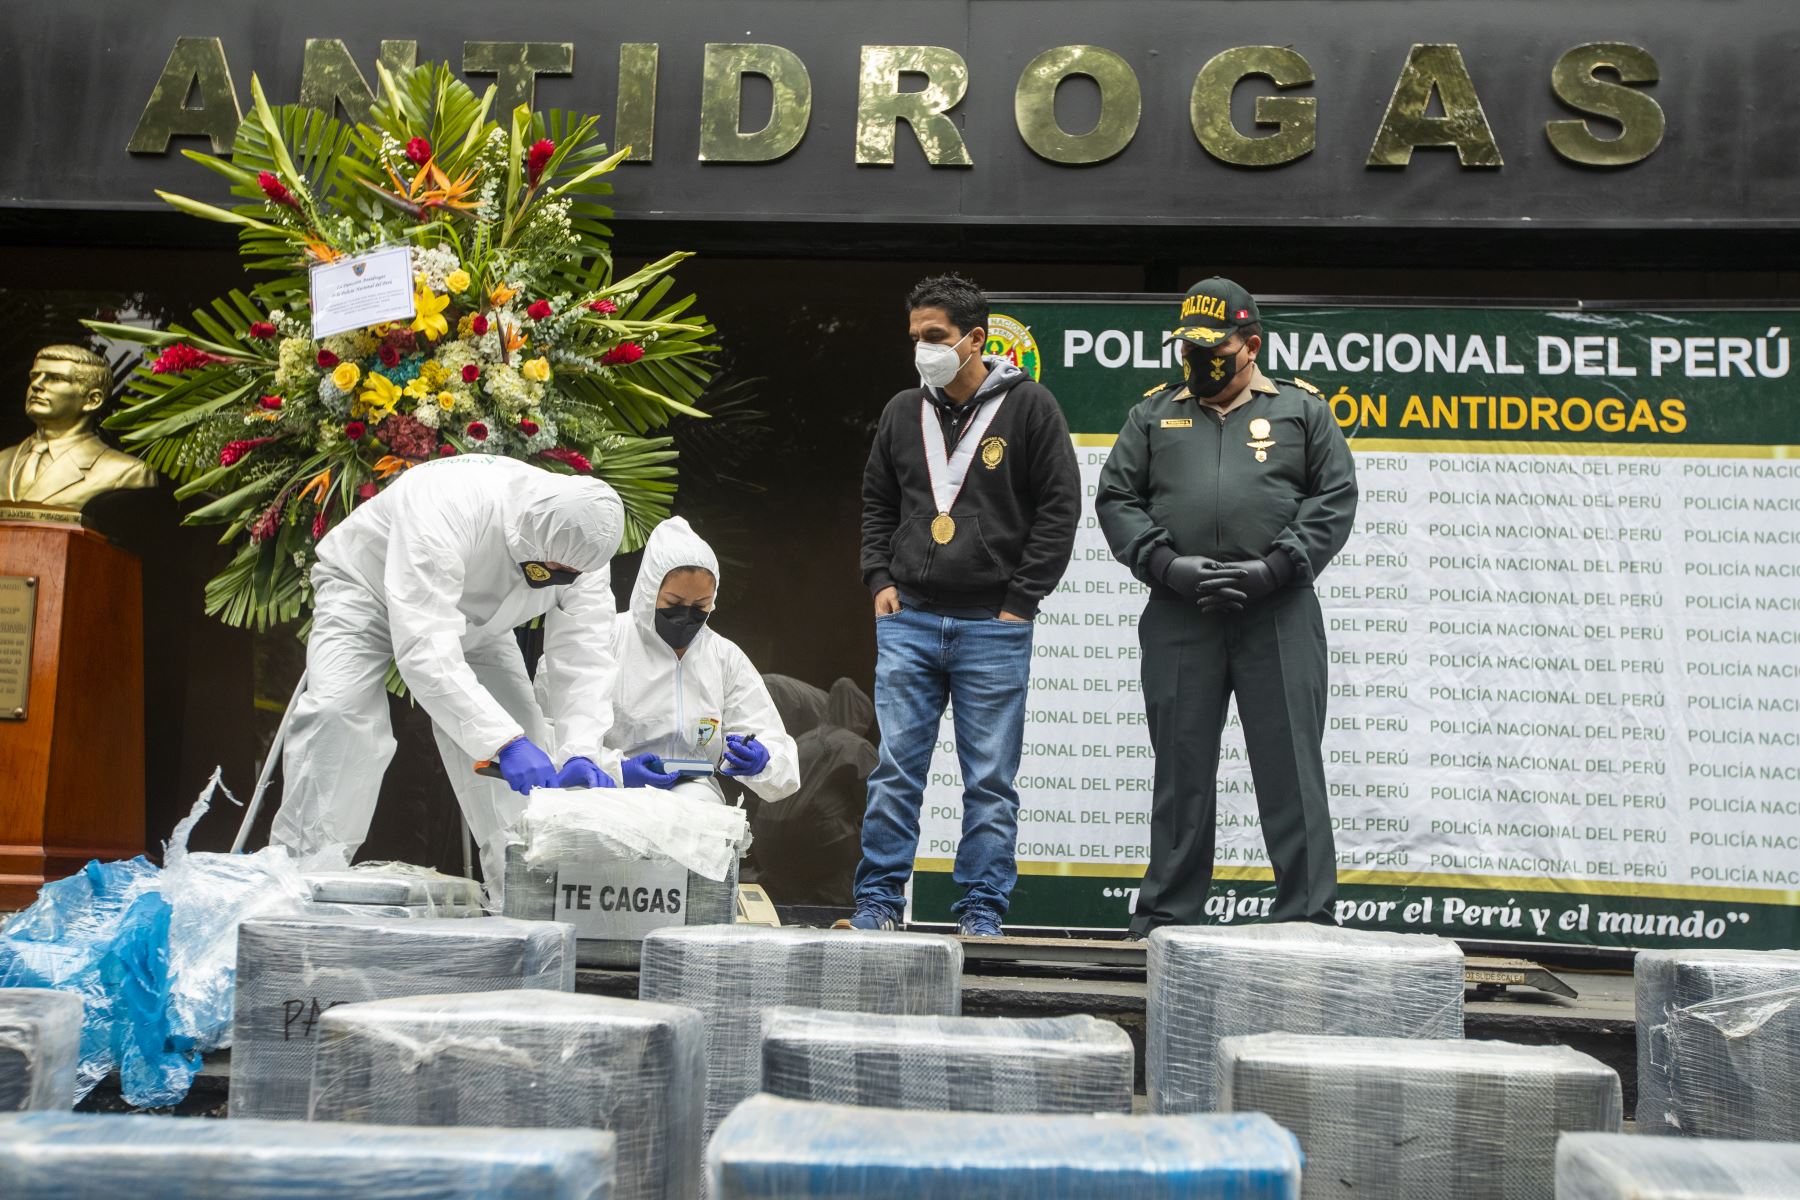 La PNP decomisó gran cantidad de droga que era transportada en un camión desde el VRAEM. La unidad fue intervenida por agentes de la DIRANDRO en el KM139 de la Panamericana Norte en Huacho. Foto: ANDINA/Carla Patiño